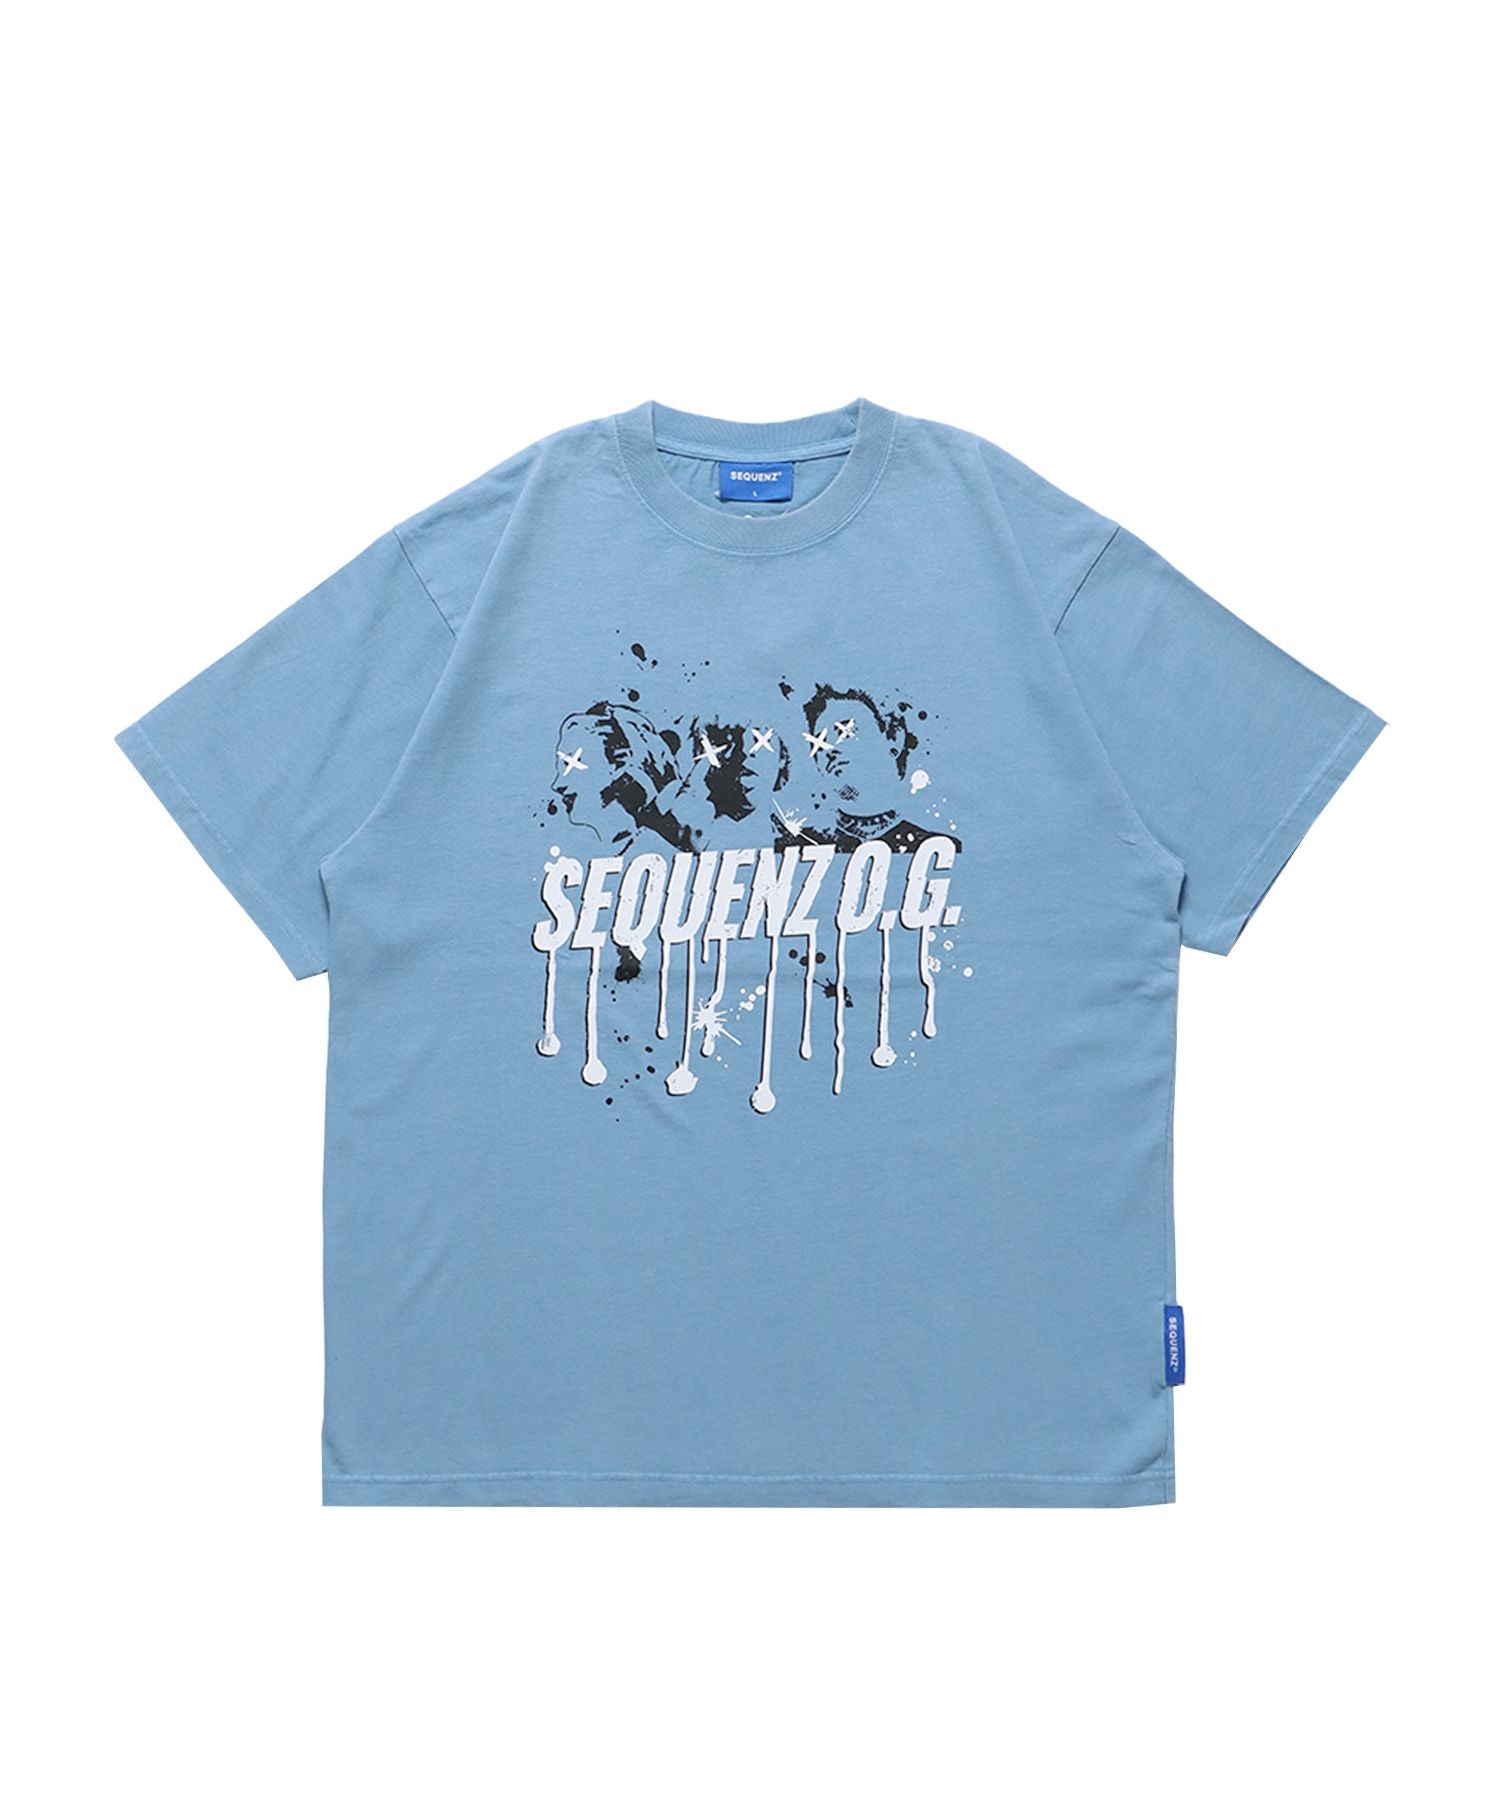 【SEQUENZ】TOUR FADE S/S TEE / 半袖Tシャツ クルーネック ブランドロゴ ツアーT バックプリント ハードバイオ スカイブルー